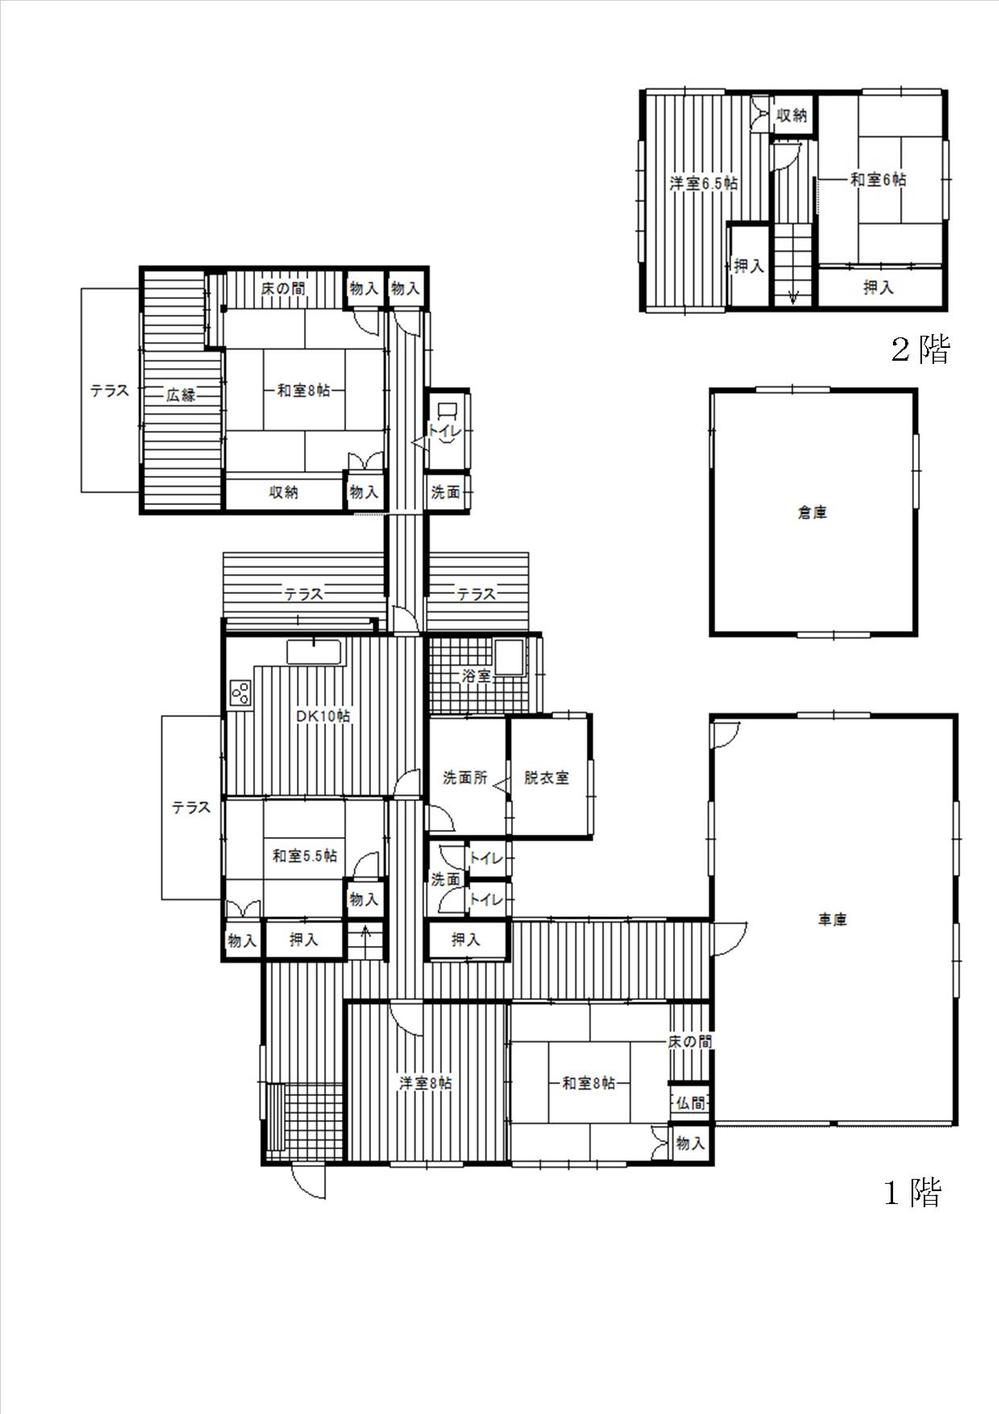 Floor plan. 12.8 million yen, 6DK, Land area 935.8 sq m , Building area 170.76 sq m